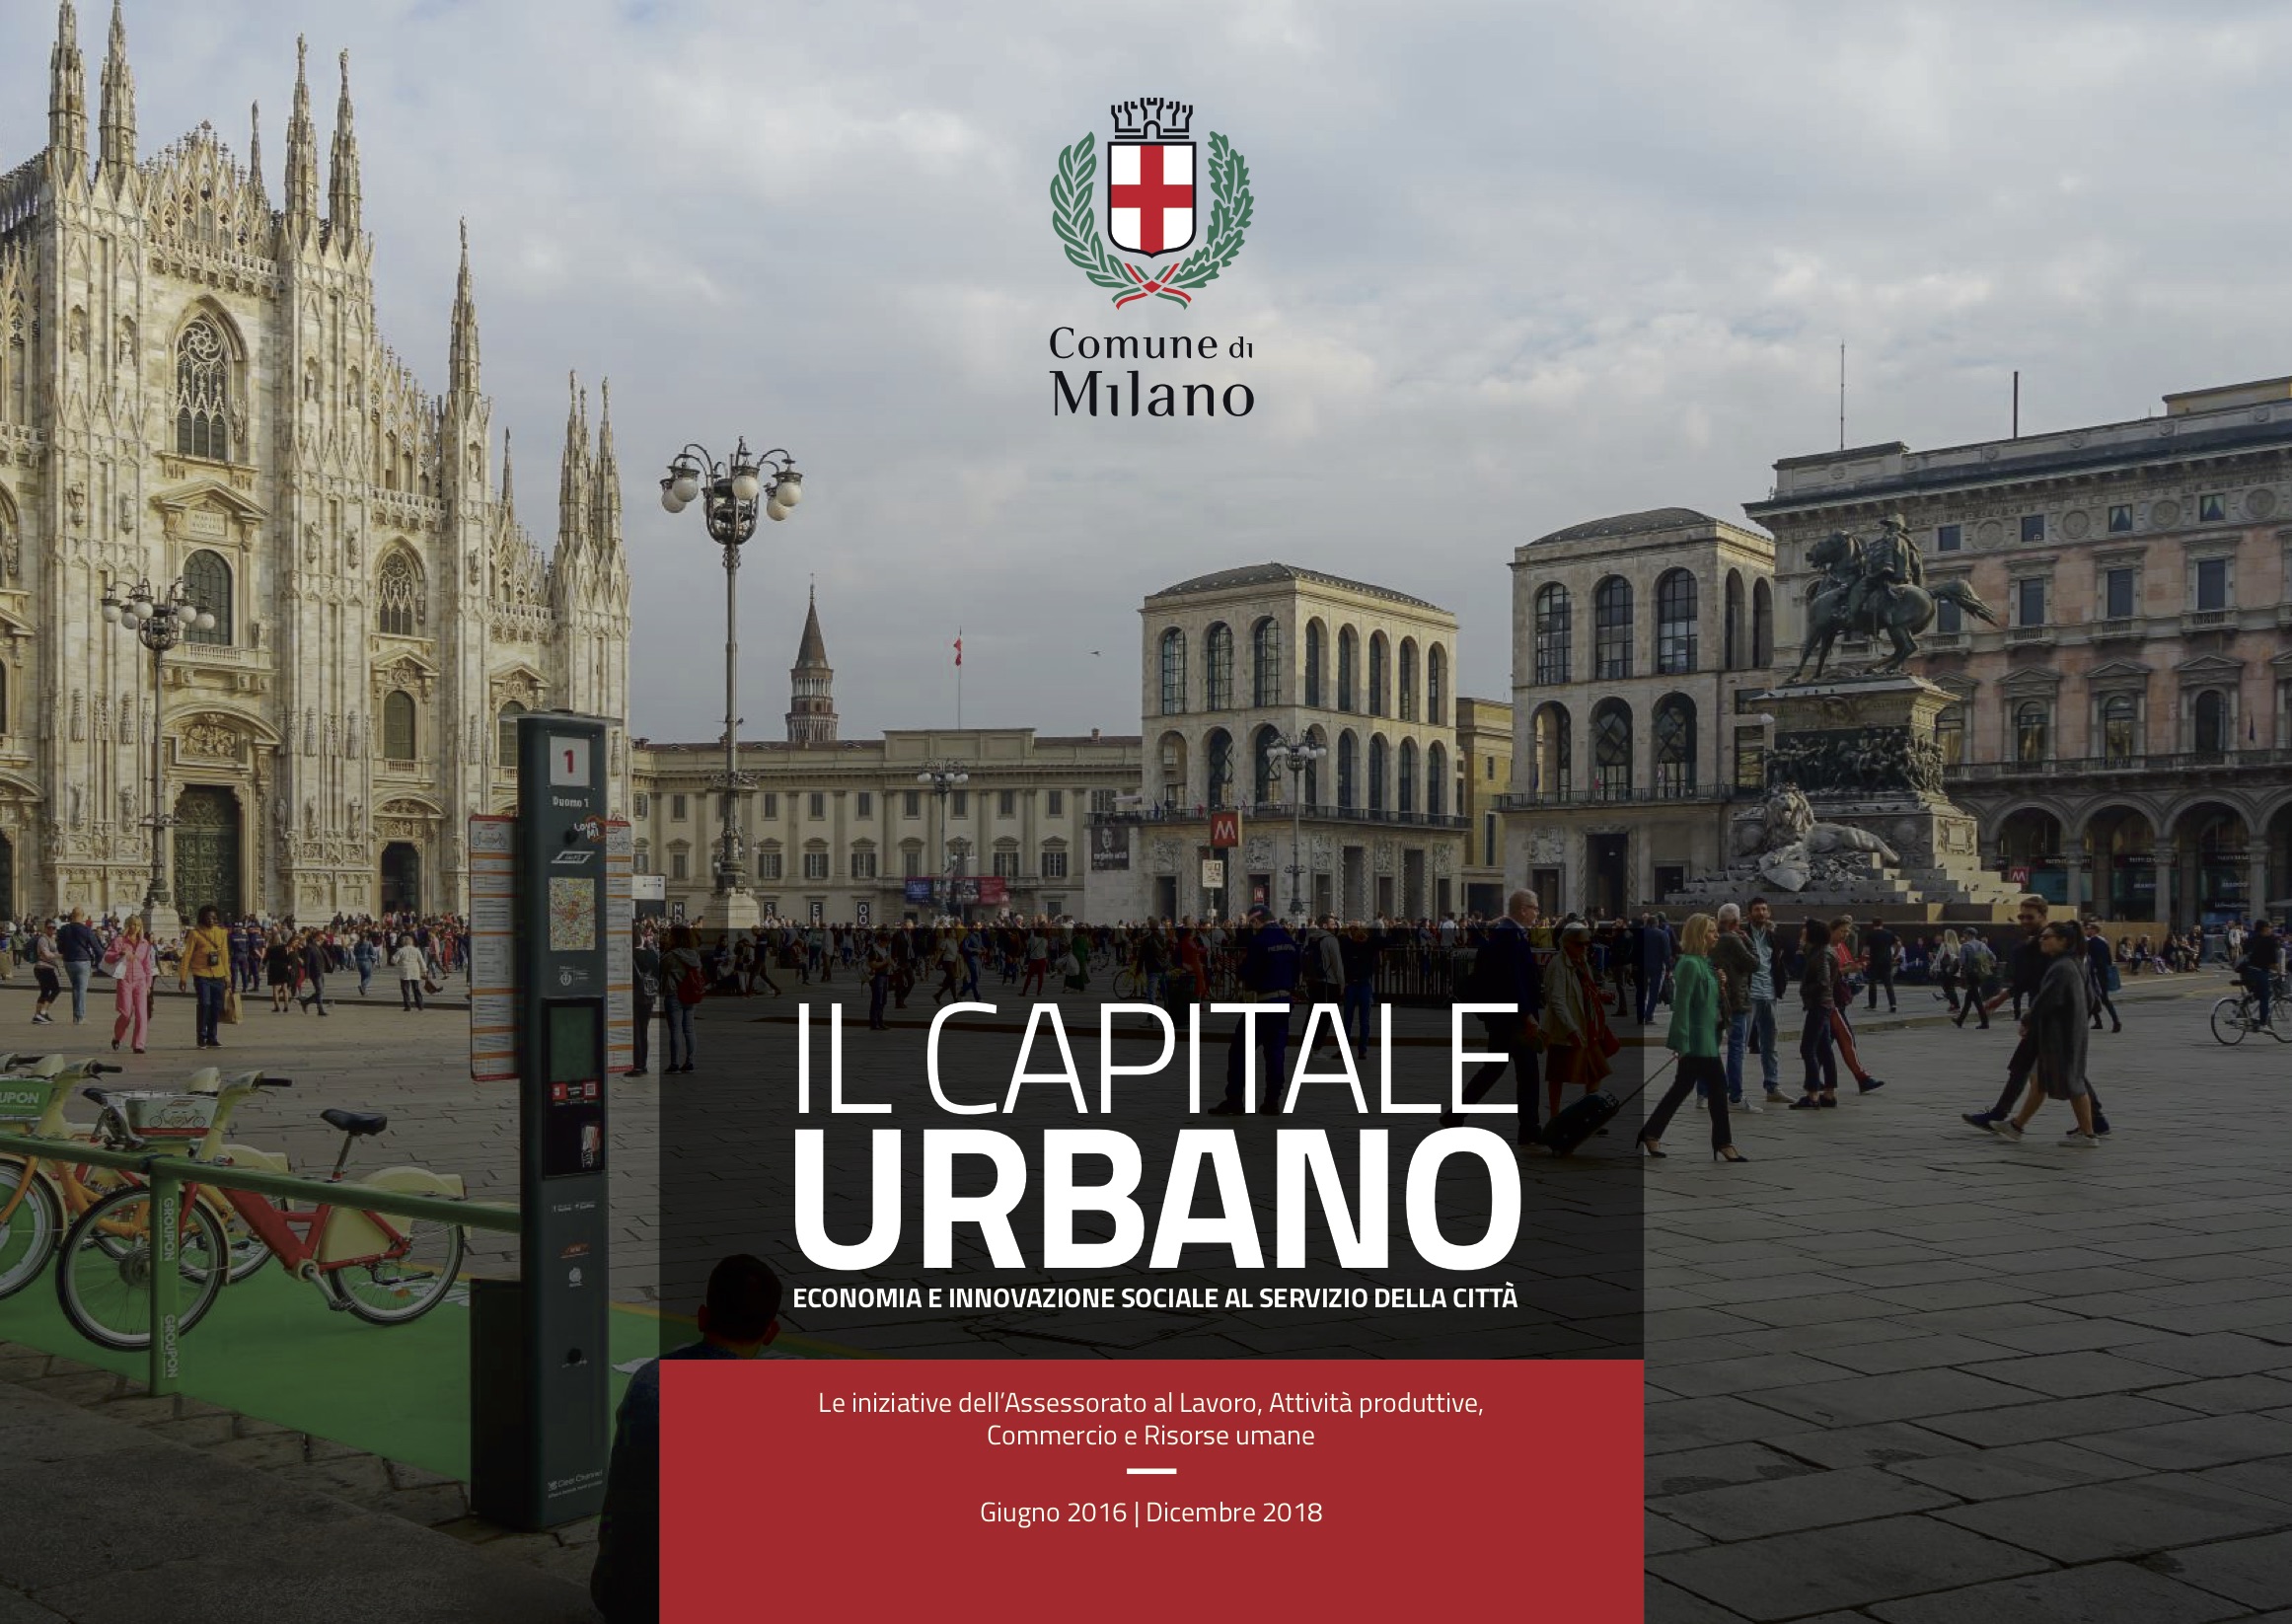 Il Capitale Urbano: report di metà mandato